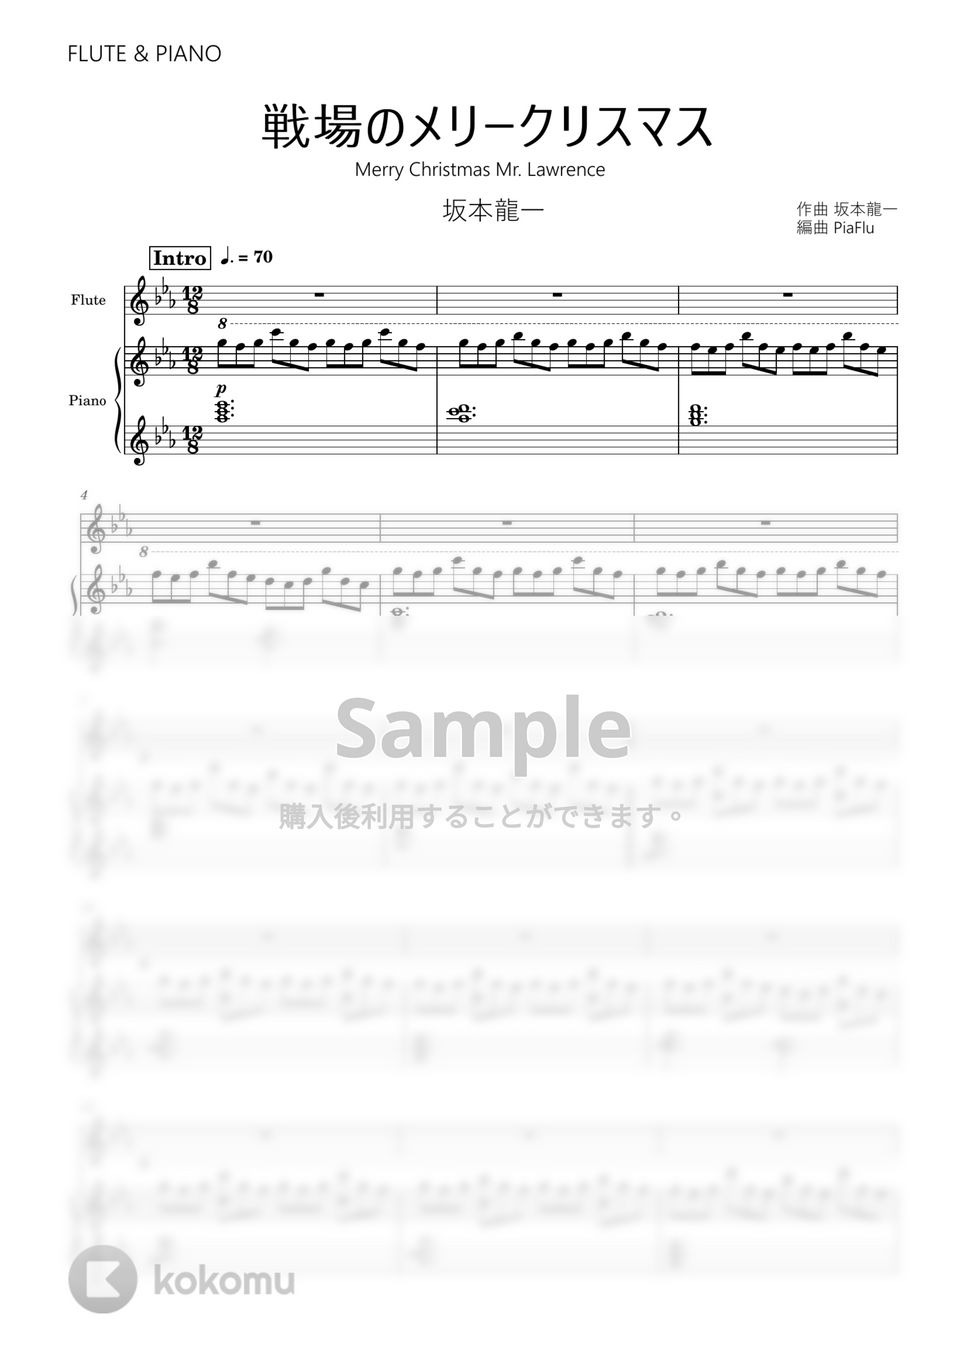 戦場のメリークリスマス by PiaFlu / ピアフル Piano&Flute